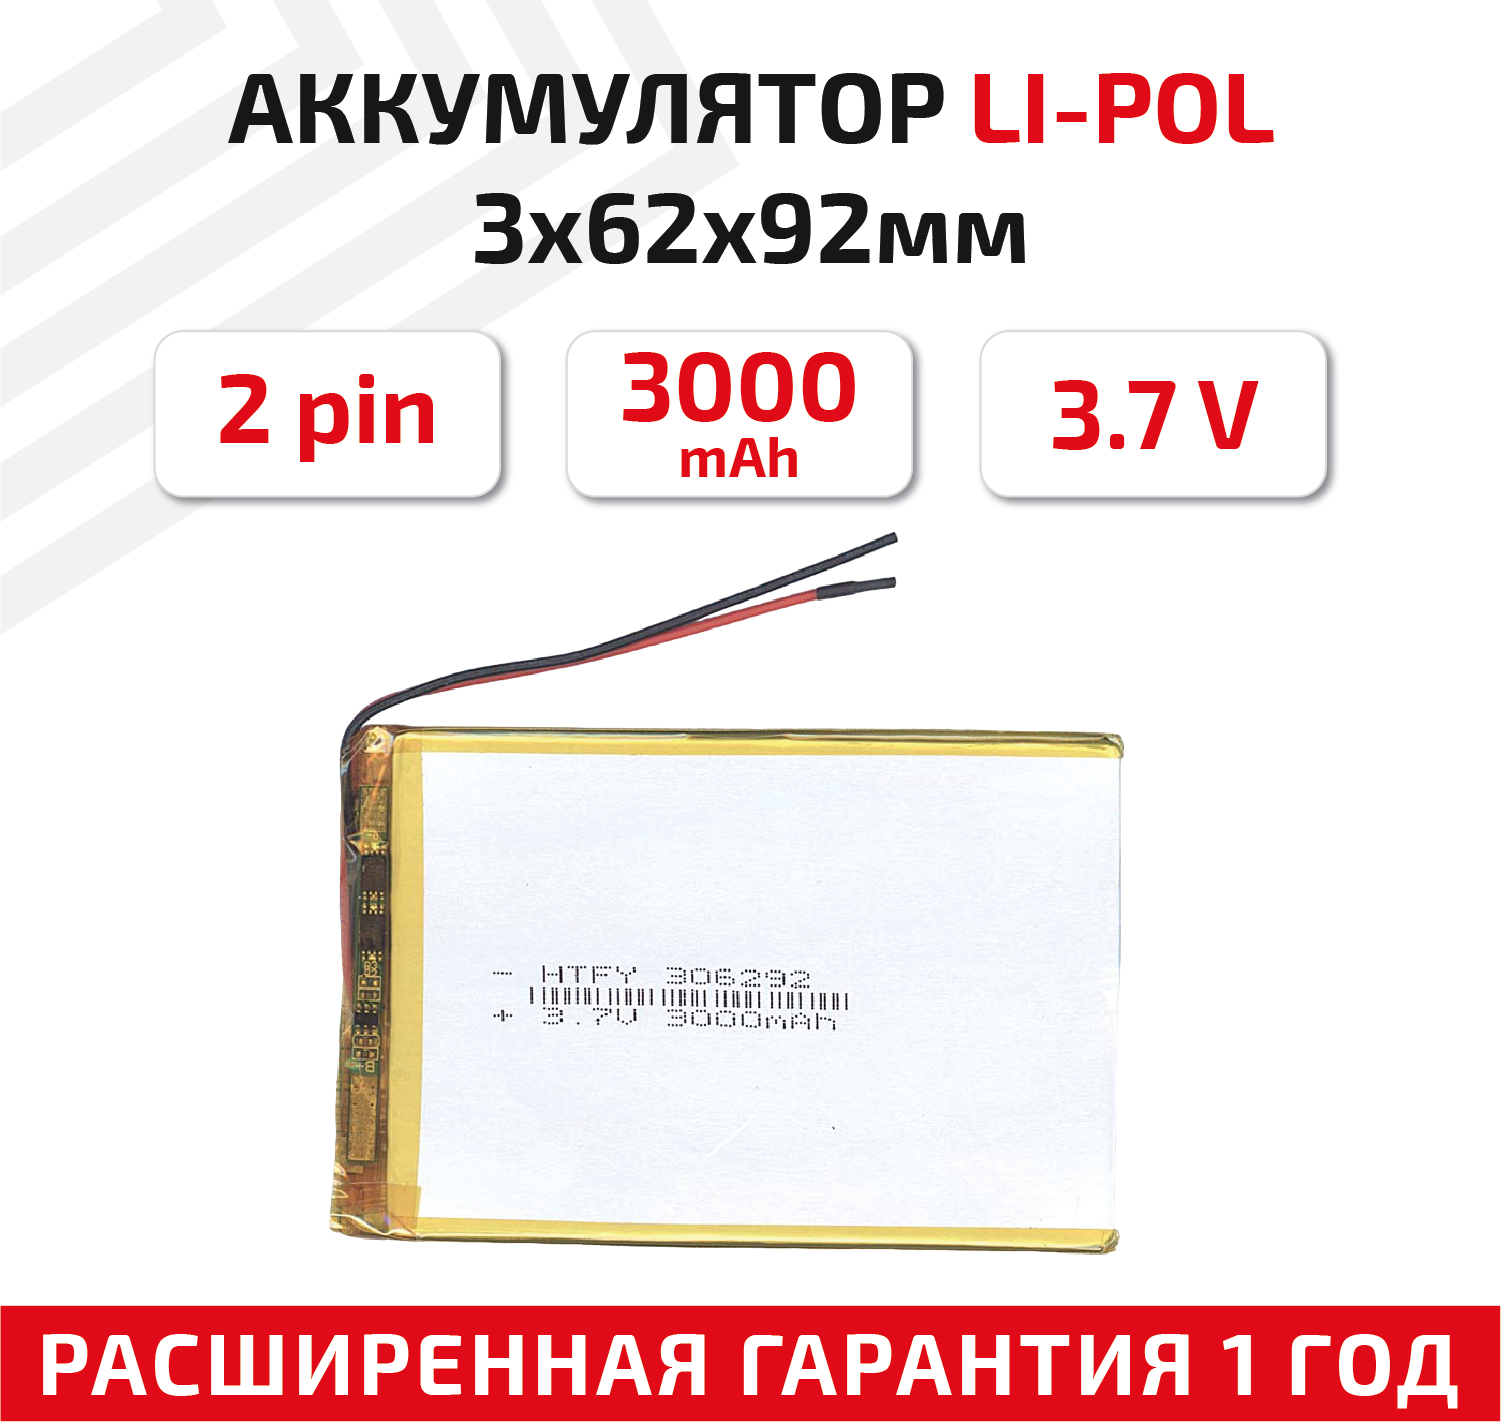 Универсальный аккумулятор (АКБ) для планшета, видеорегистратора и др, 3х62х92мм, 3000мАч, 3.7В, Li-Pol, 2pin (на 2 провода)